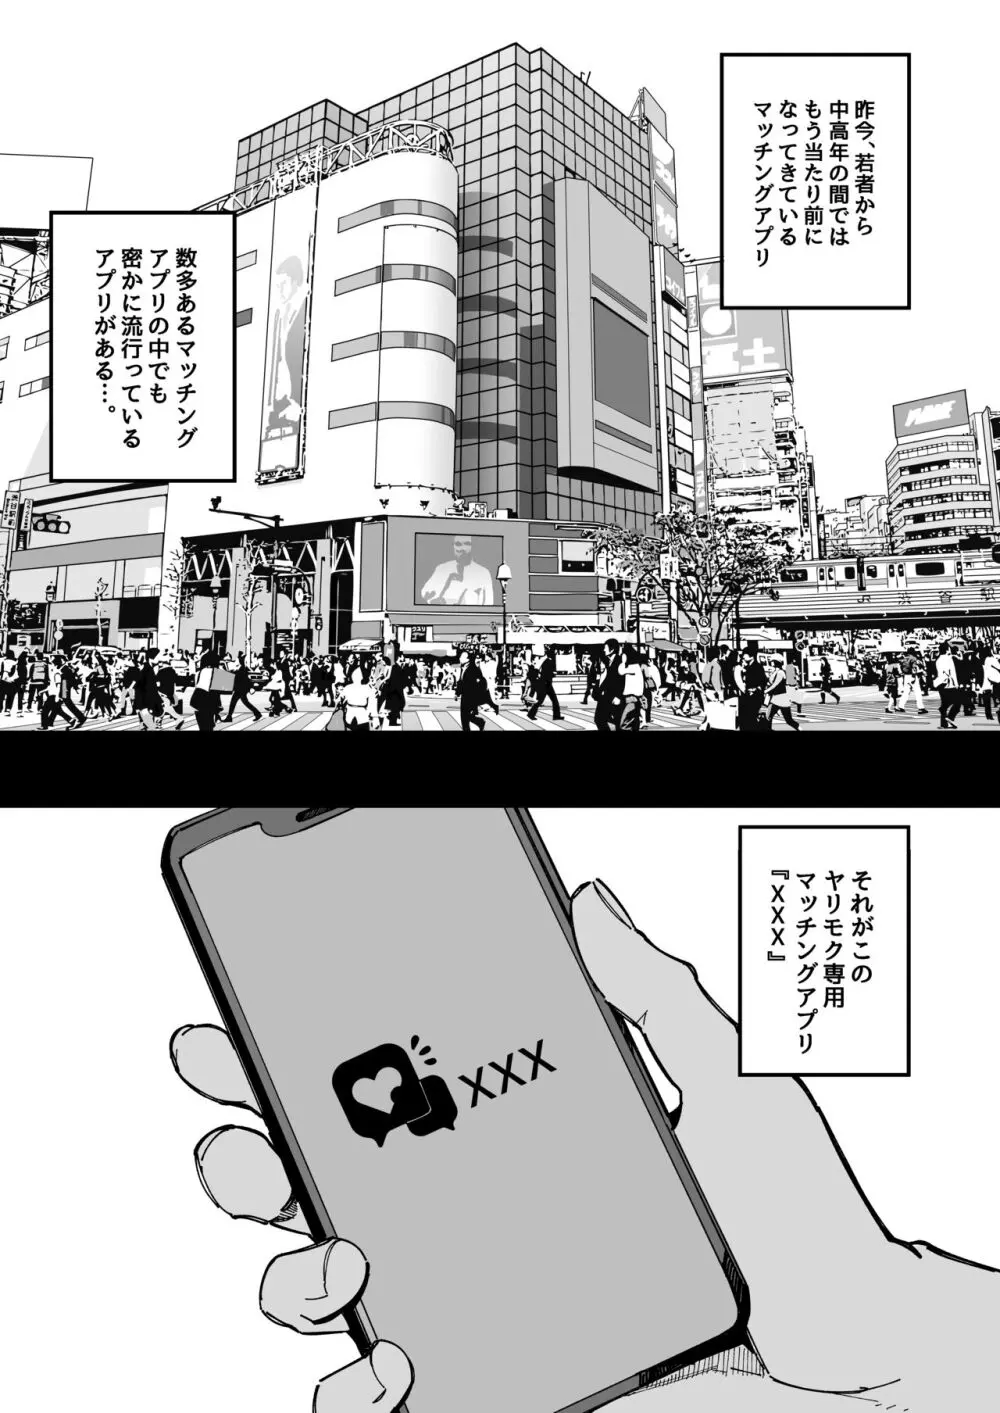 ヤリモク専用マッチングアプリ - 同人誌 - エロ漫画 - NyaHentai　